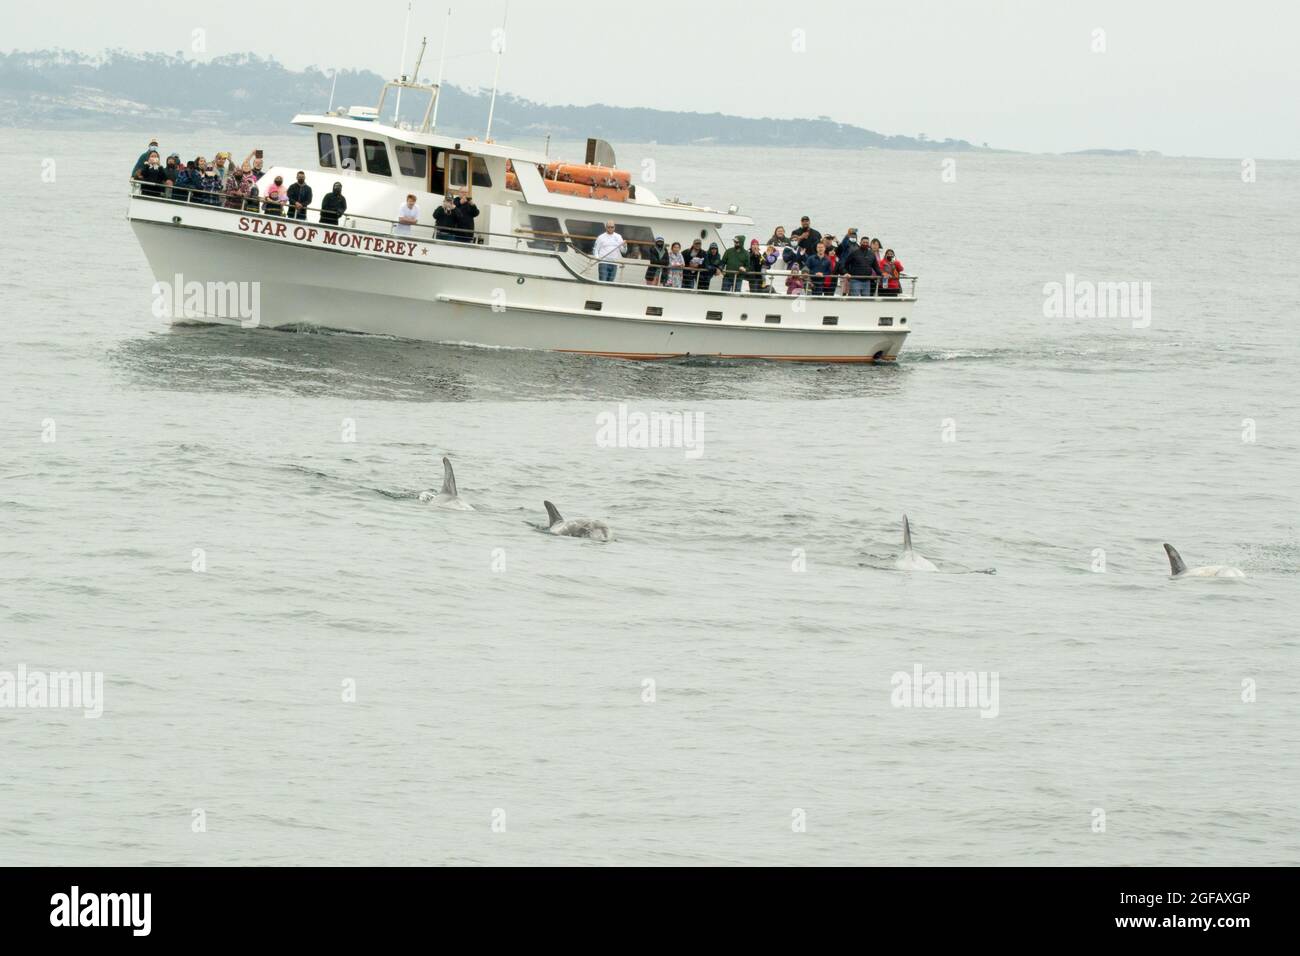 4 i delfini di Risso nuotano di fronte alla barca bianca in vetroresina per l'avvistamento delle balene "Star of Monterey". I passeggeri sul ponte guardano e filmano delfini selvatici Foto Stock